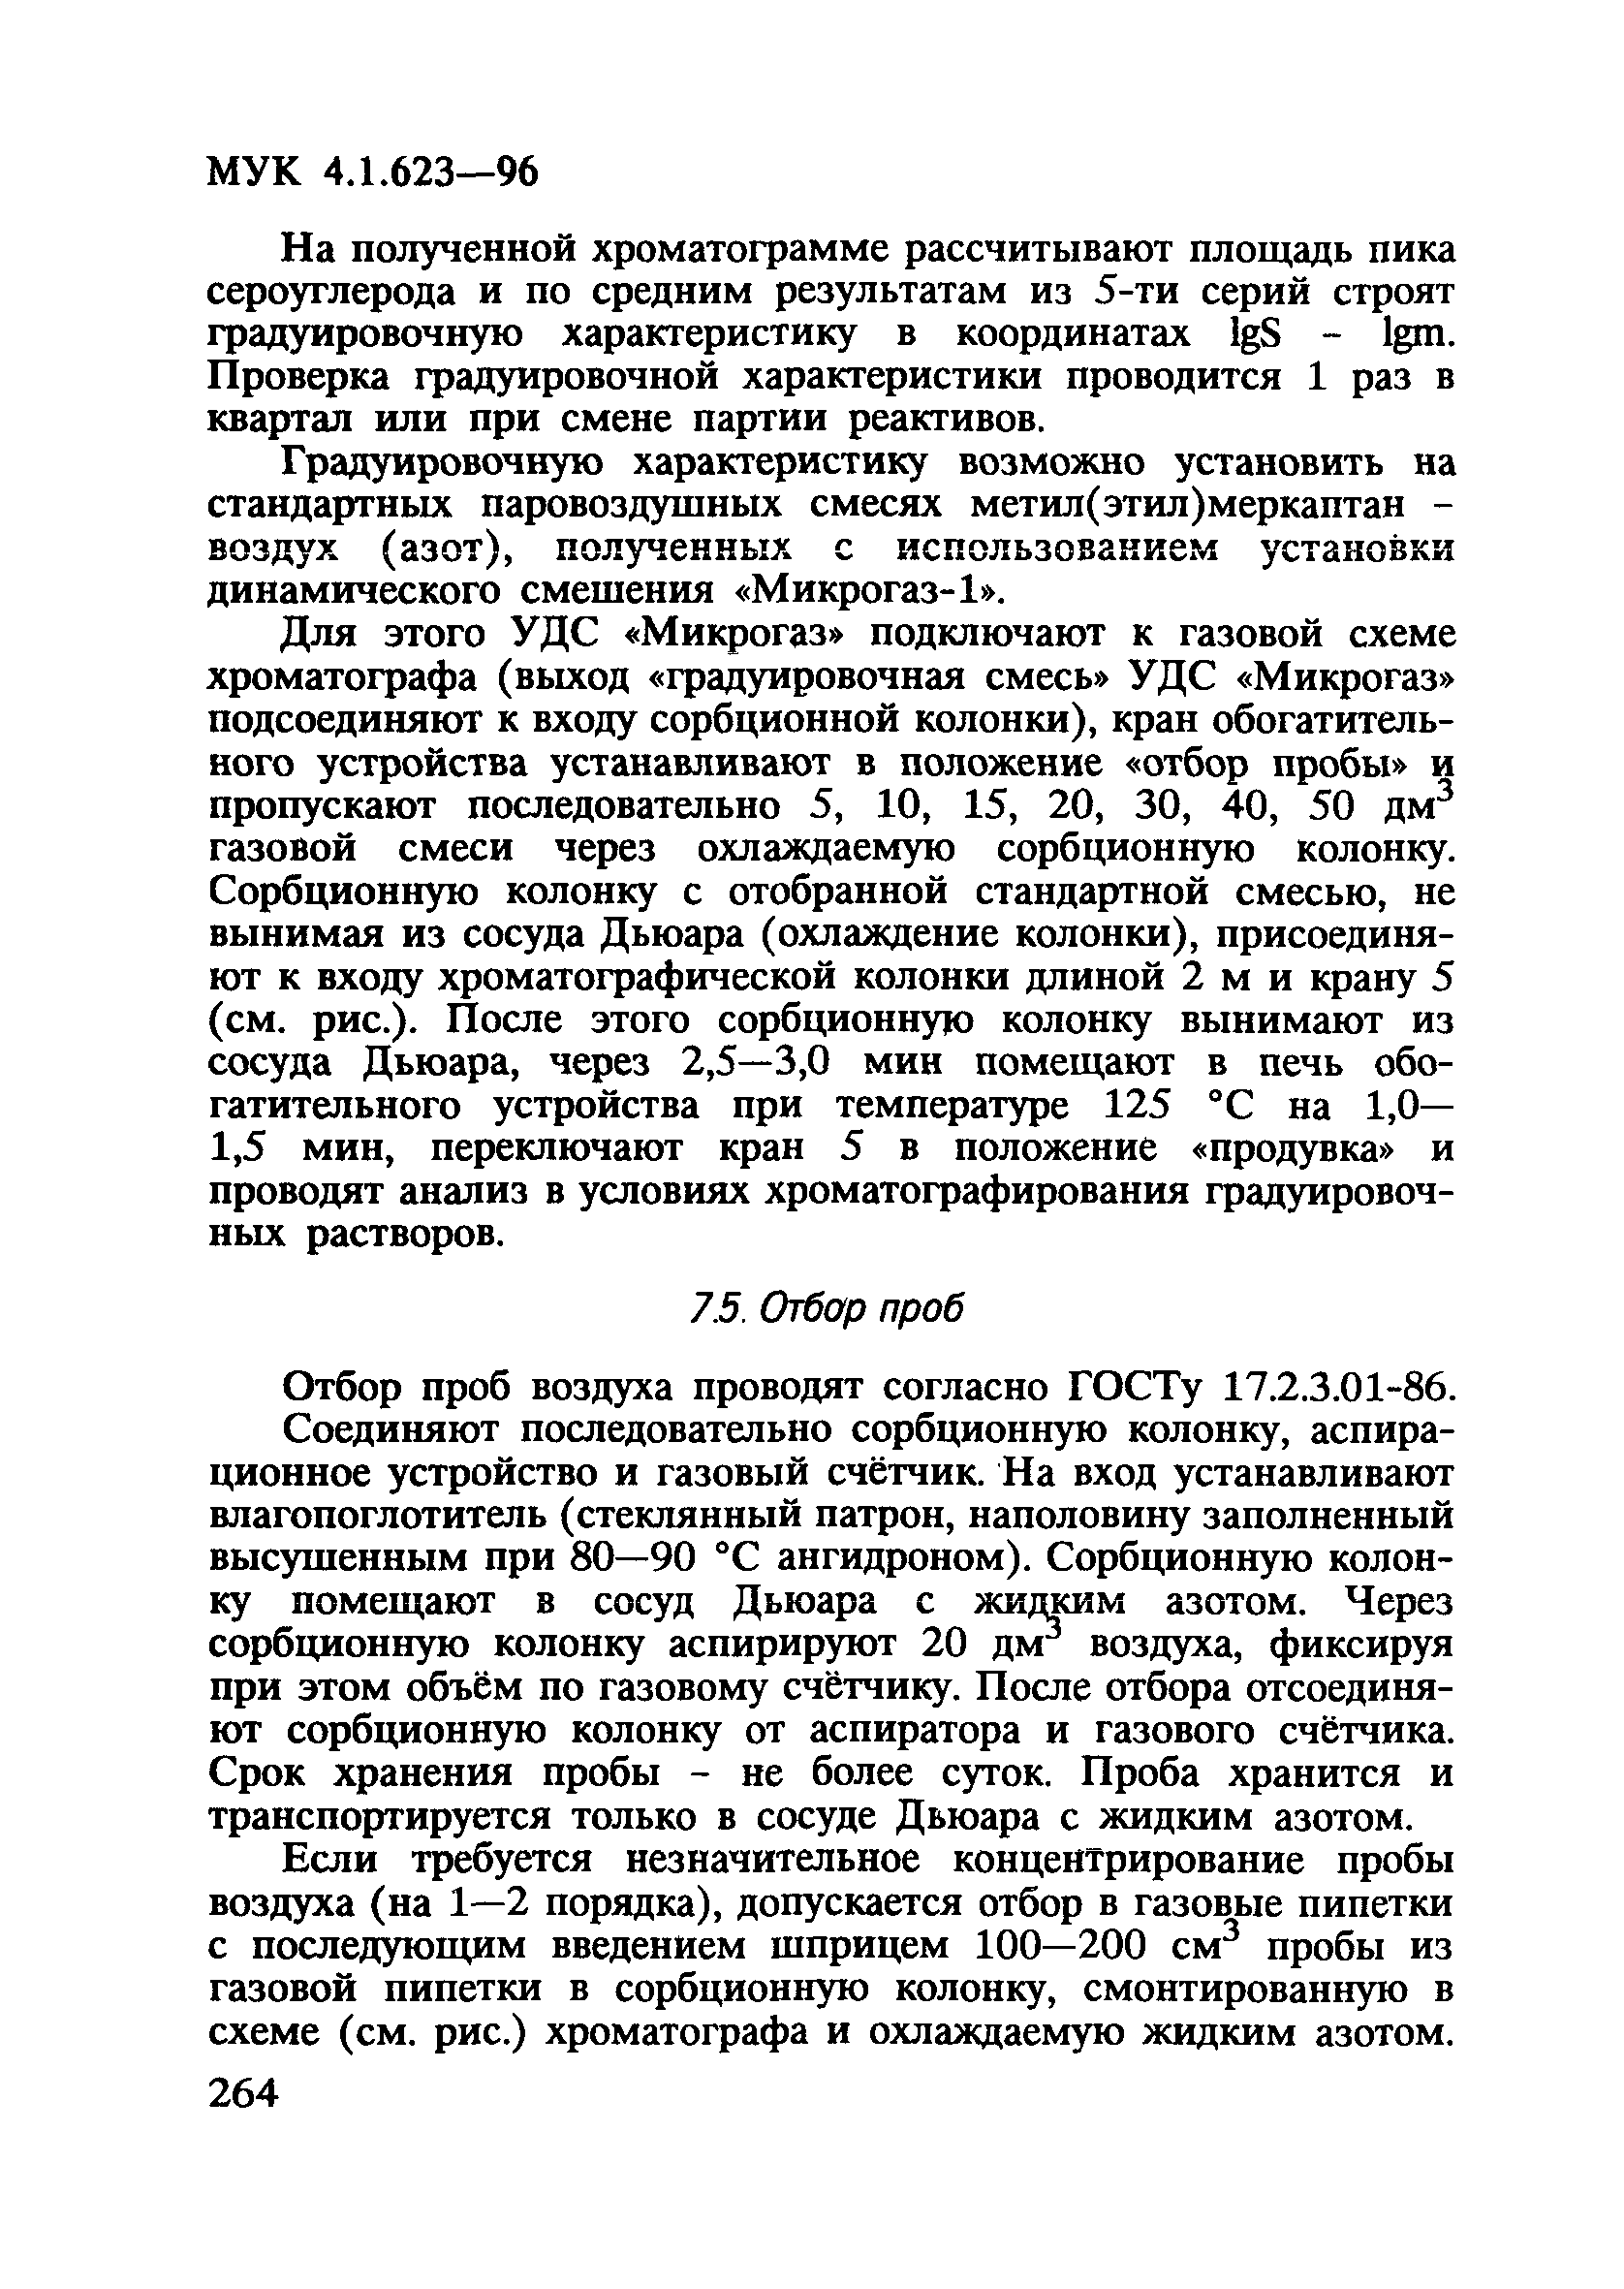 МУК 4.1.623-96